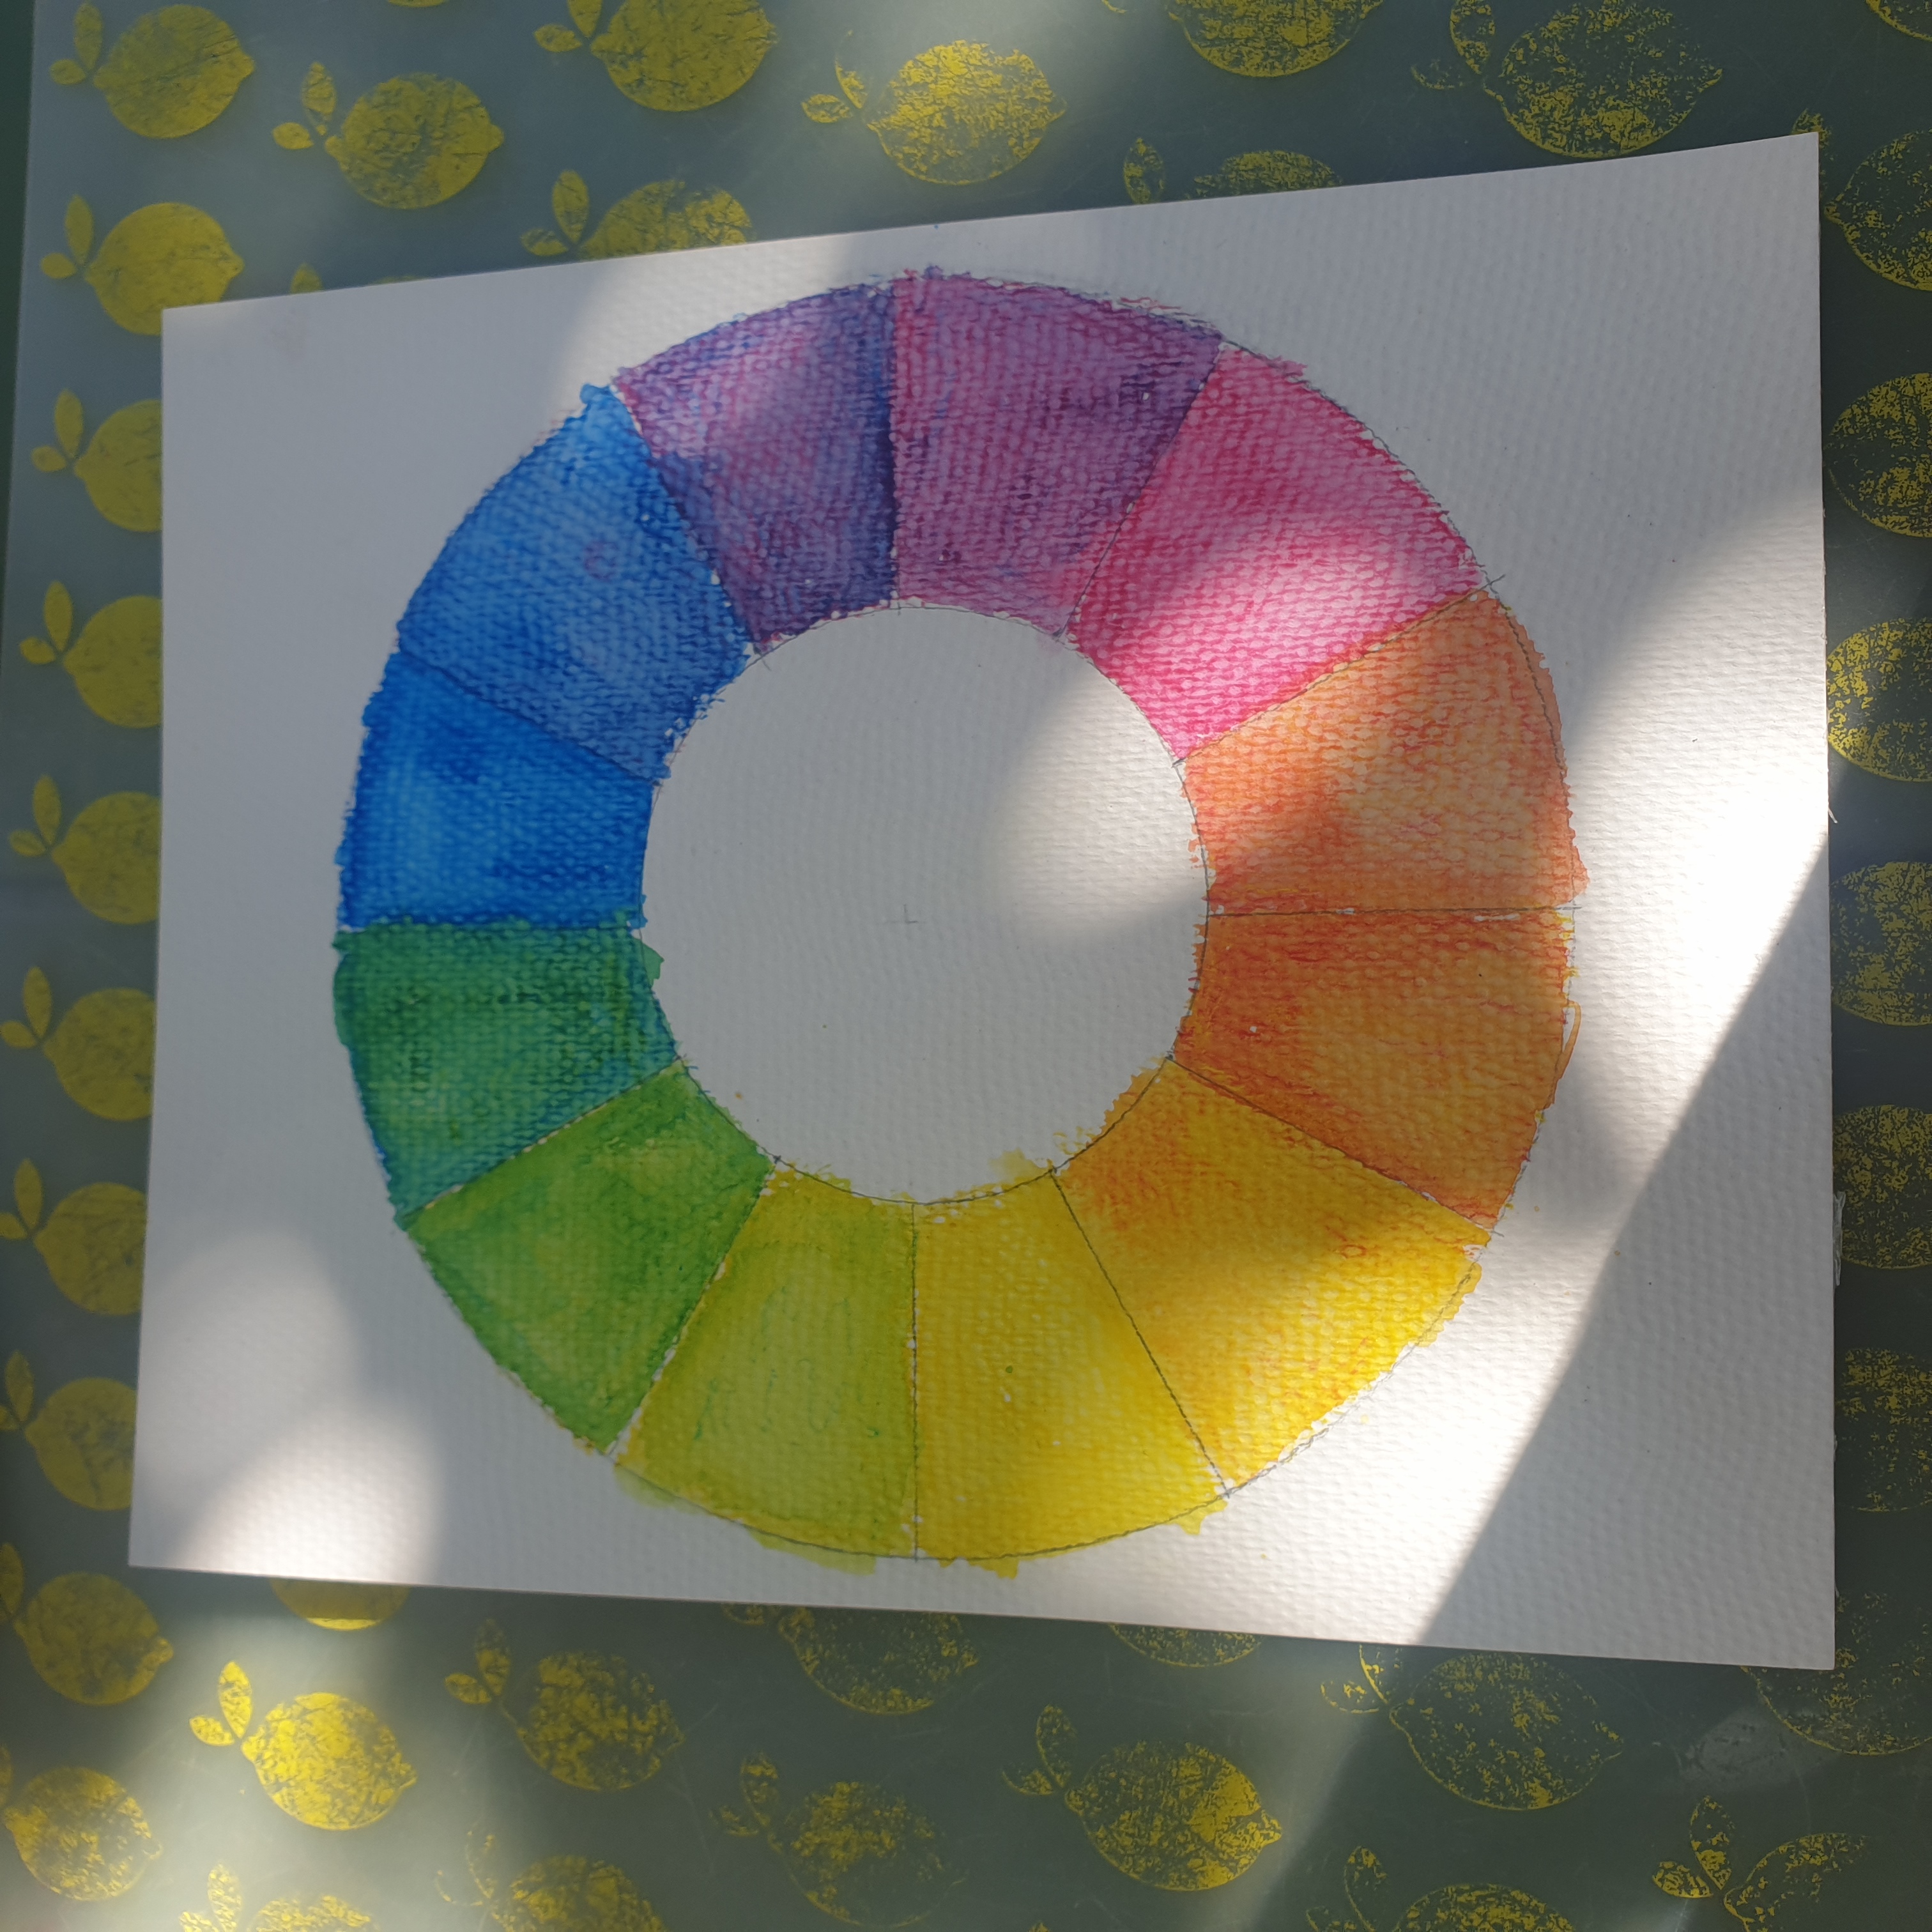 Ideeën om te tekenen en kleuren voor kinderen. Met aquarel potloden kun je kinderen heel goed uitleggen hoe de kleurencirkel werkt. Een kleurencirkel laat zien hoe je van de drie primaire kleuren rood, geel en blauw de andere kleuren maakt. 